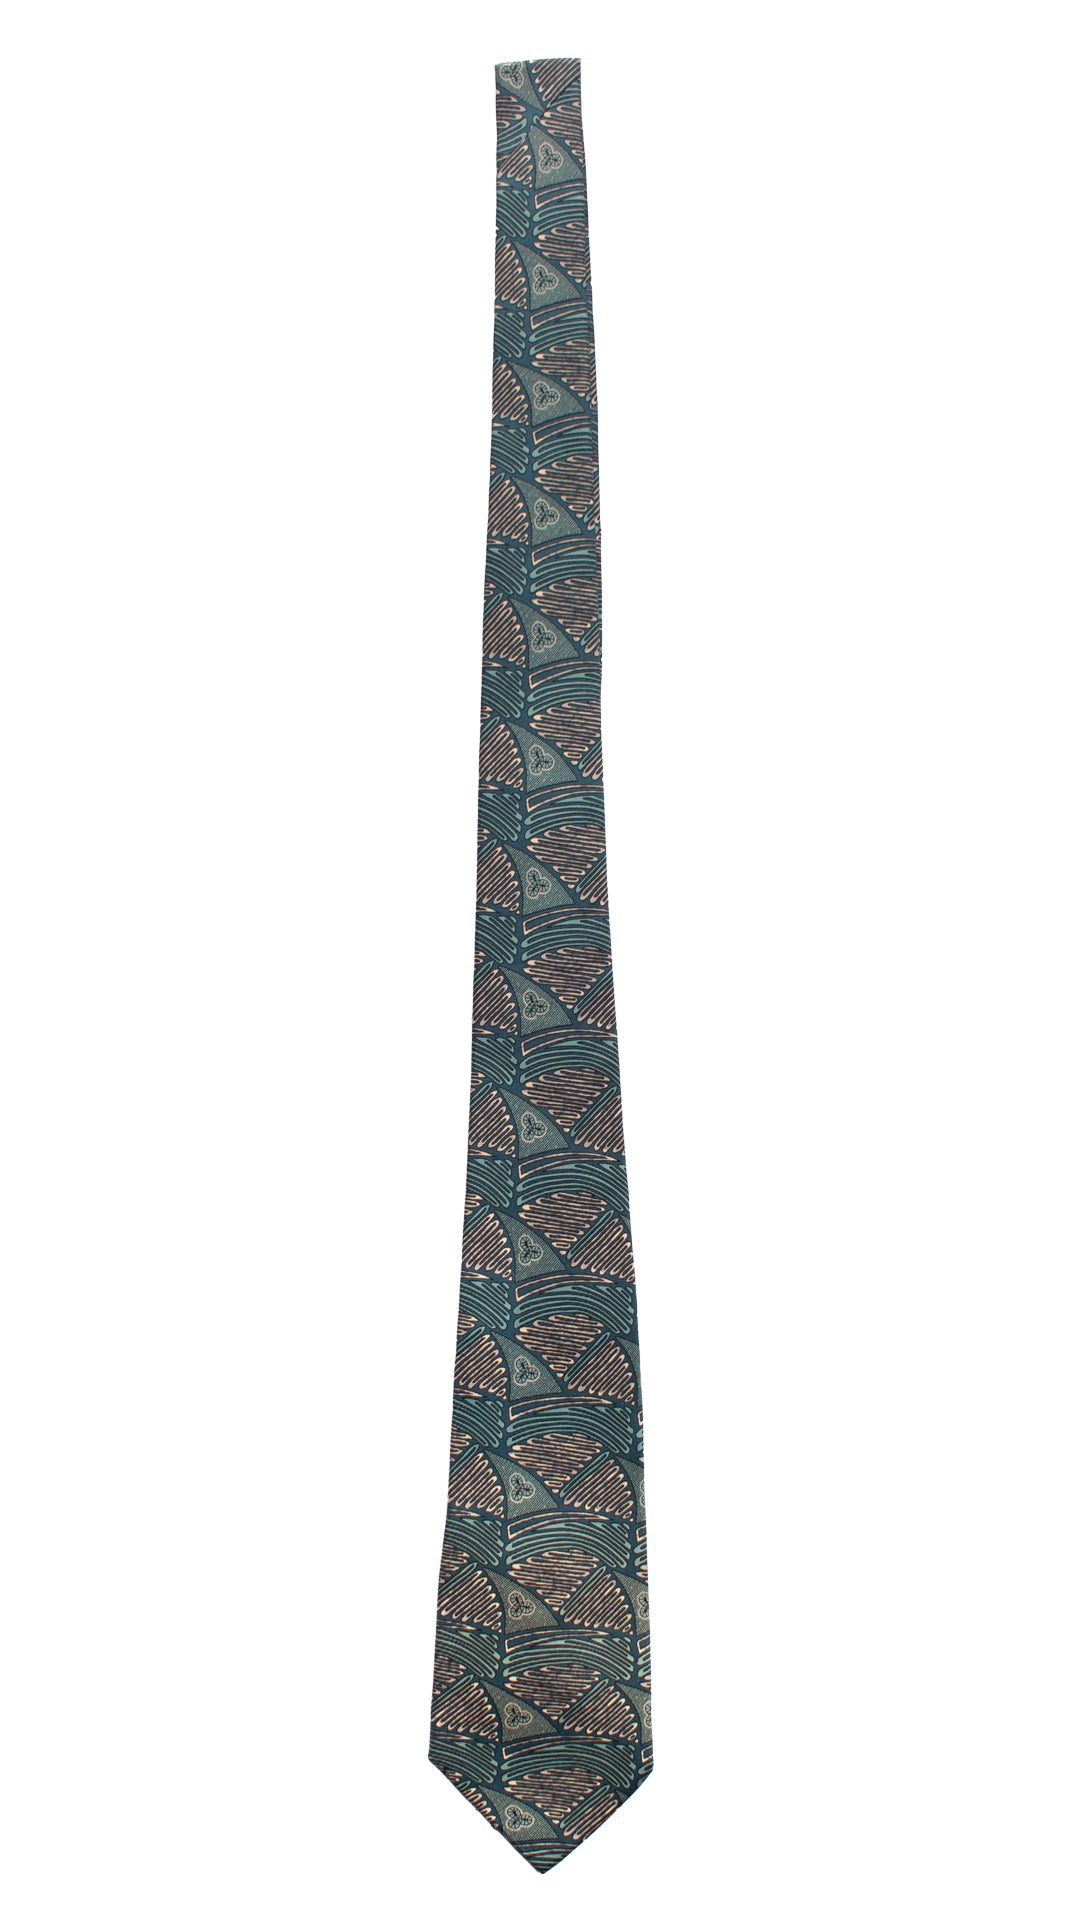 Cravatta Vintage in Twill di Seta Verde Acqua Fantasia Color Corda CV819 Intera